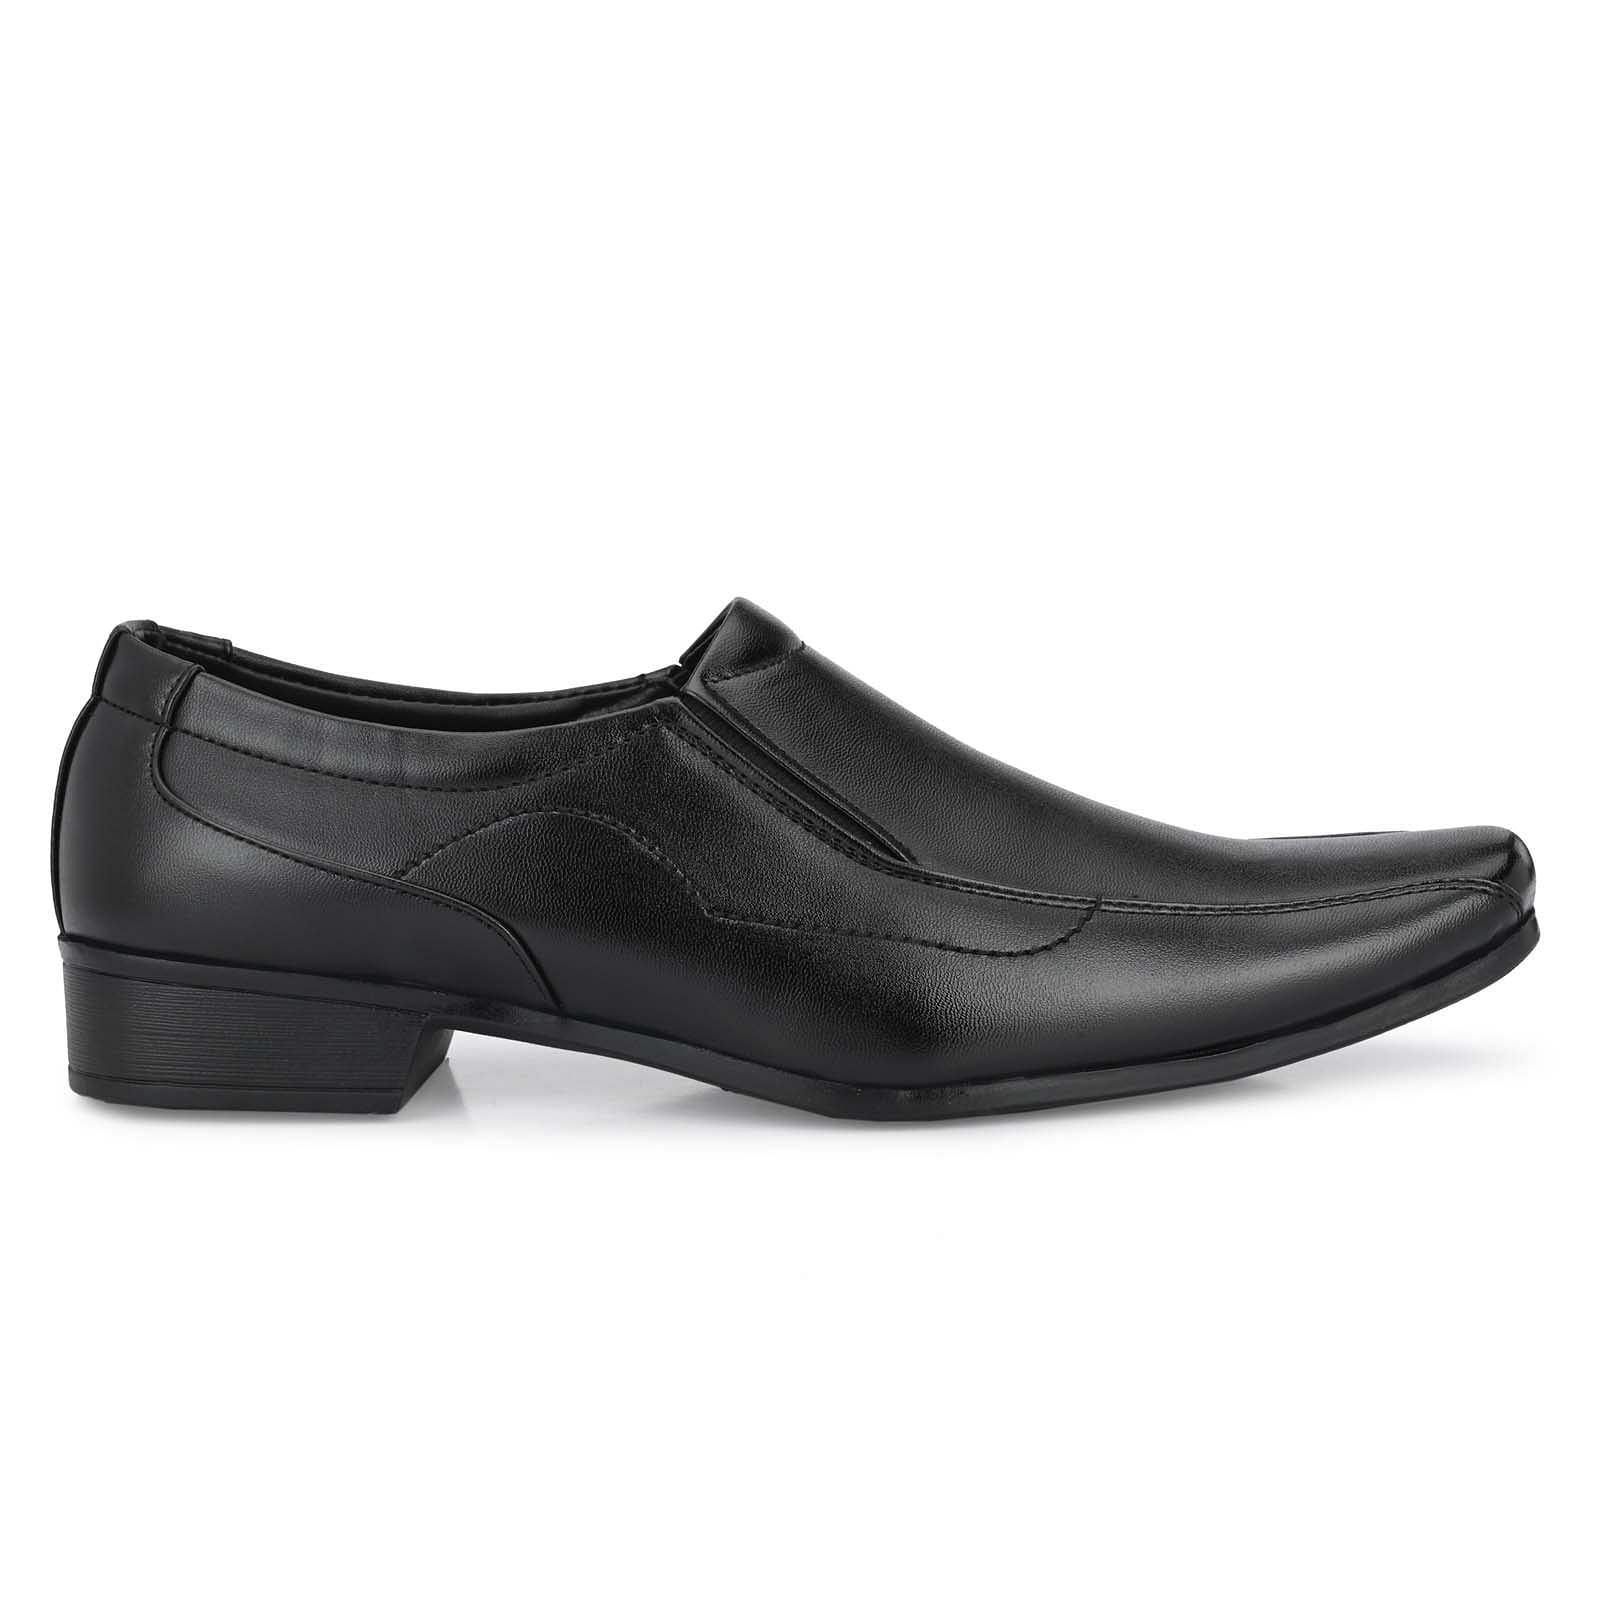 Pair-it Men moccasin Formal Shoes - Black-MN-RYDER201